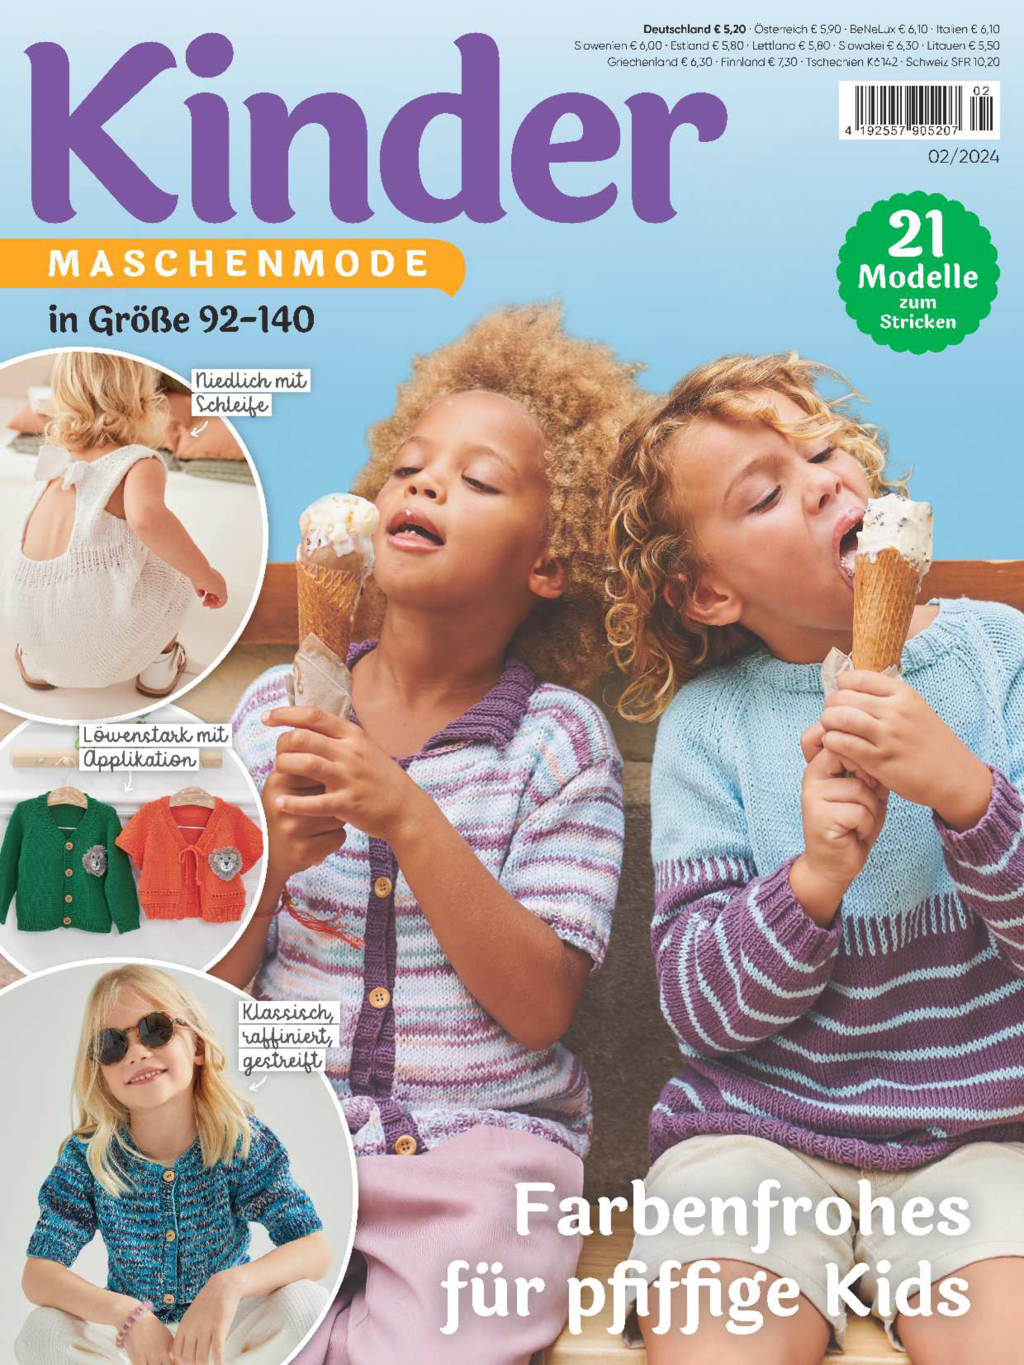 Kinder Maschenmode 2/2024 - Farbefrohes für pfiffige Kids